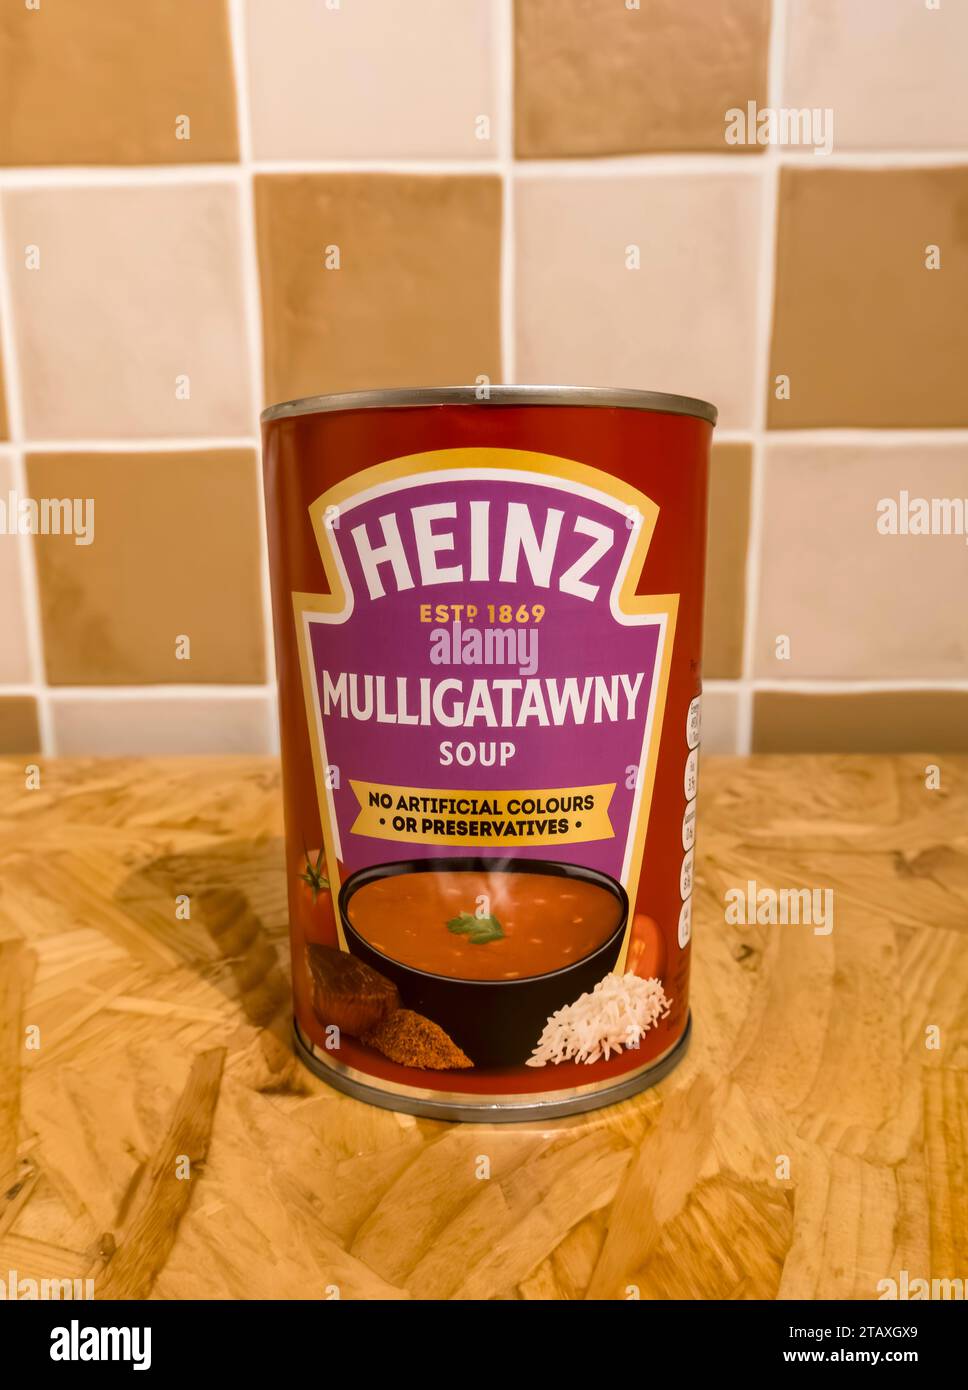 Tin of Heinz Mulligatawny Soup Stock Photo